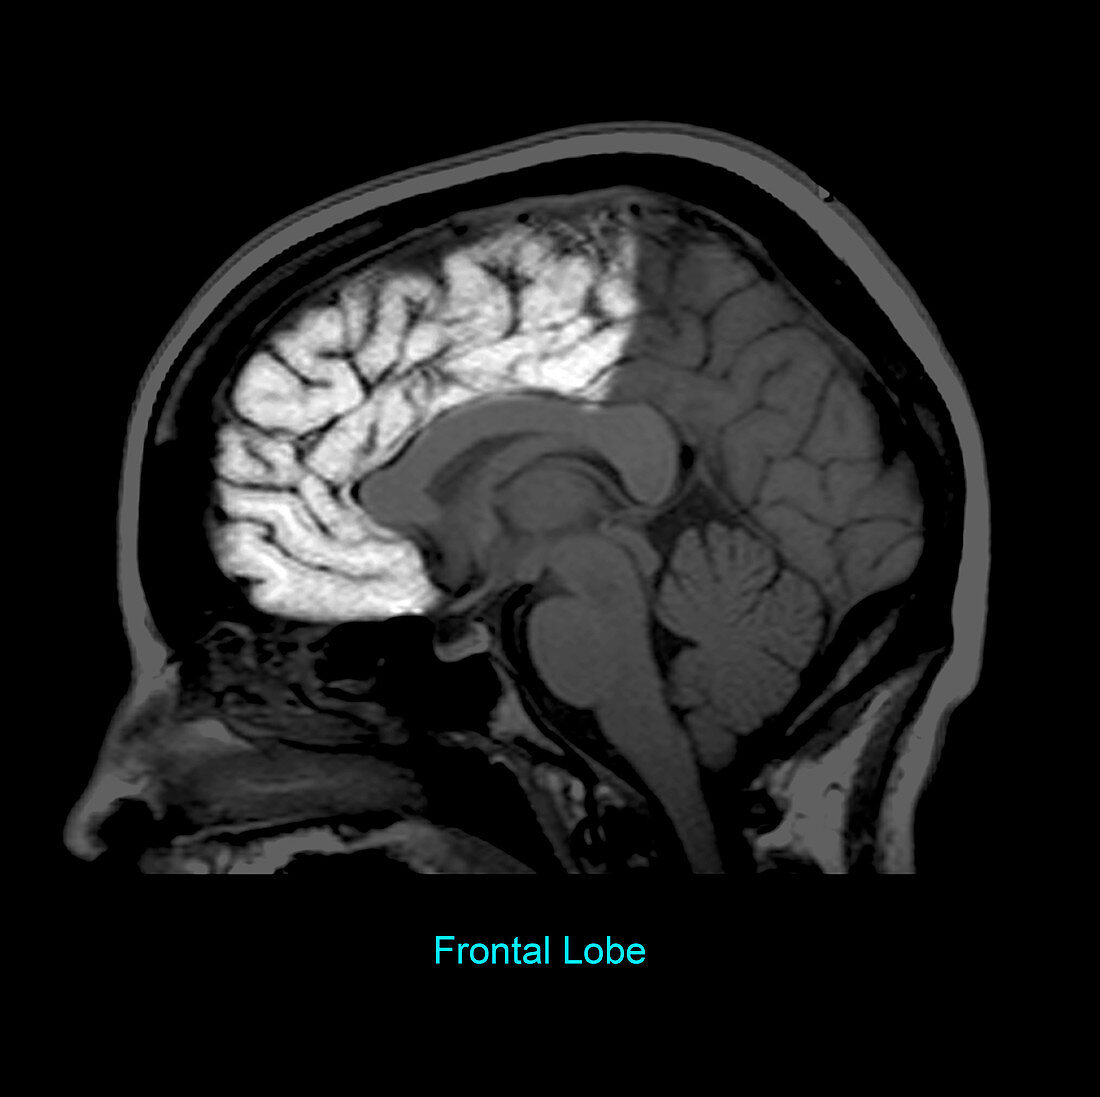 Frontal Lobe, Sagittal MRI